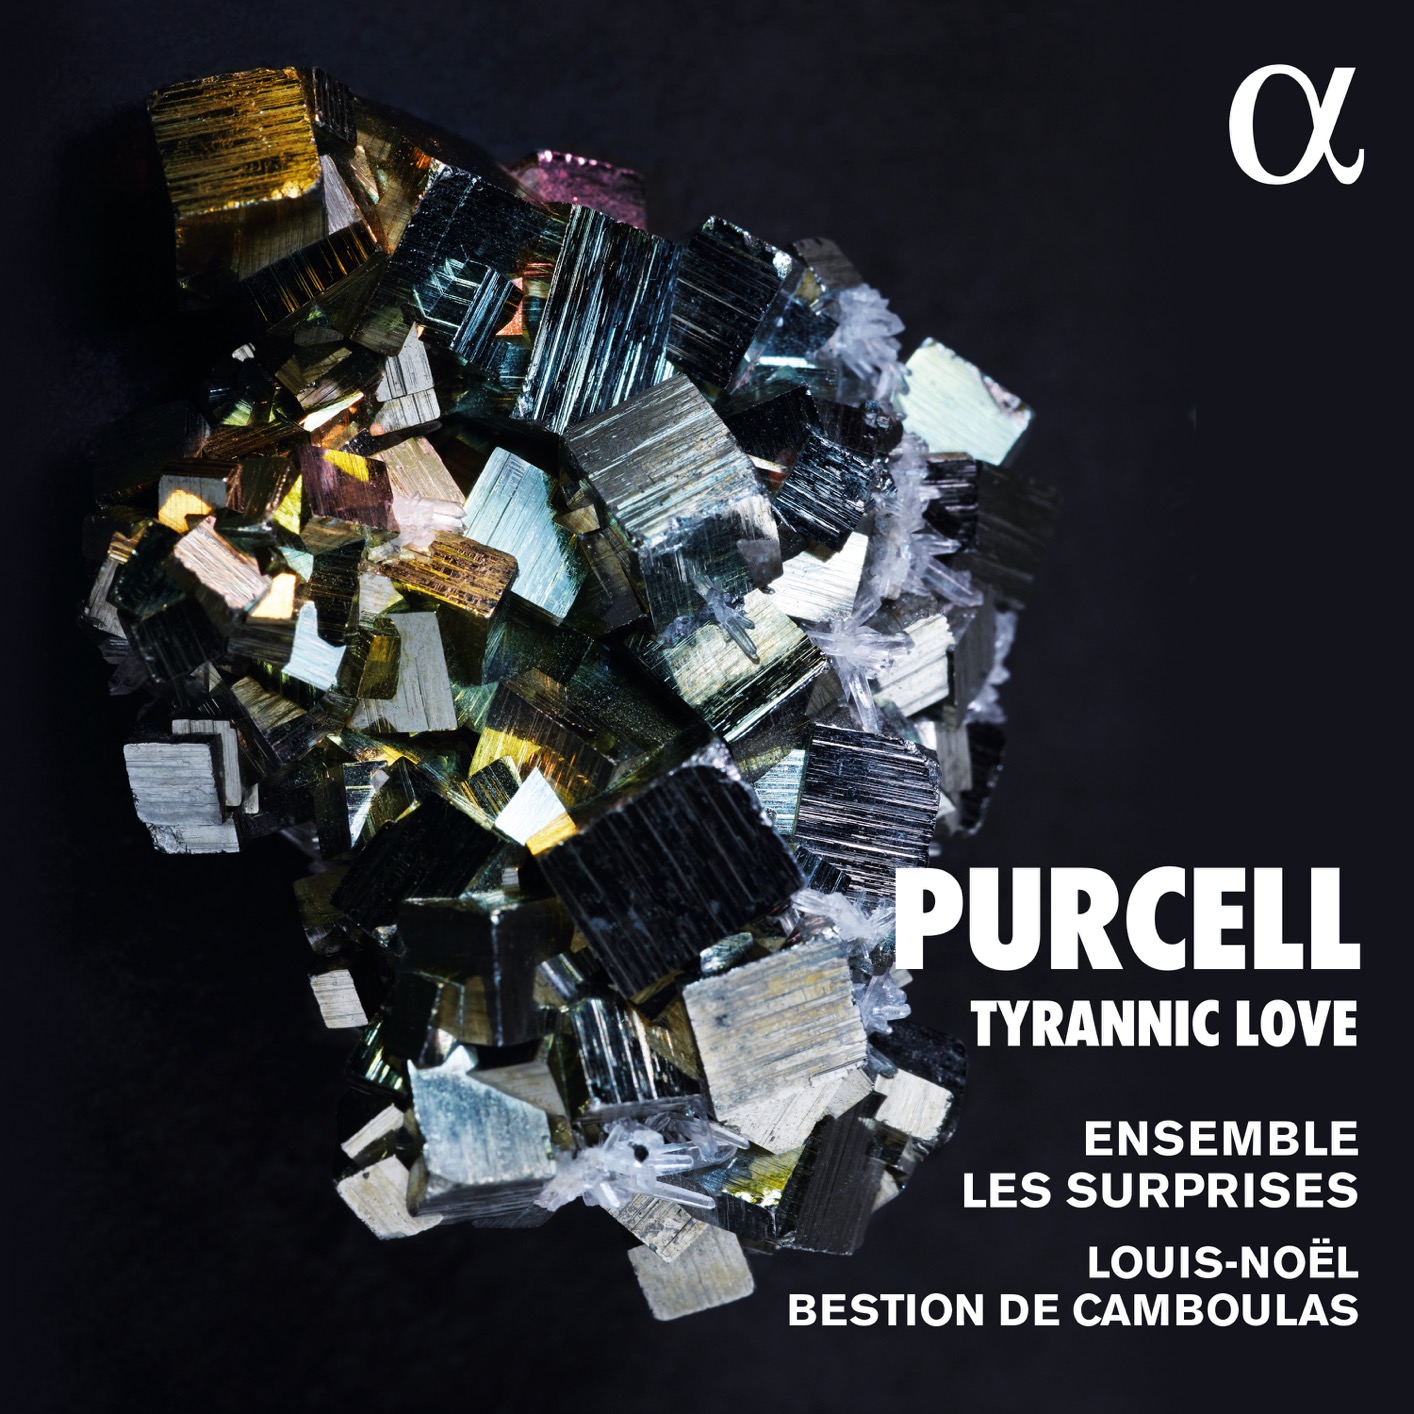 Ensemble Les Surprises, Louis-Noel Bestion de Camboulas – Purcell – Tyrannic Love (2021) [FLAC 24bit/96kHz]